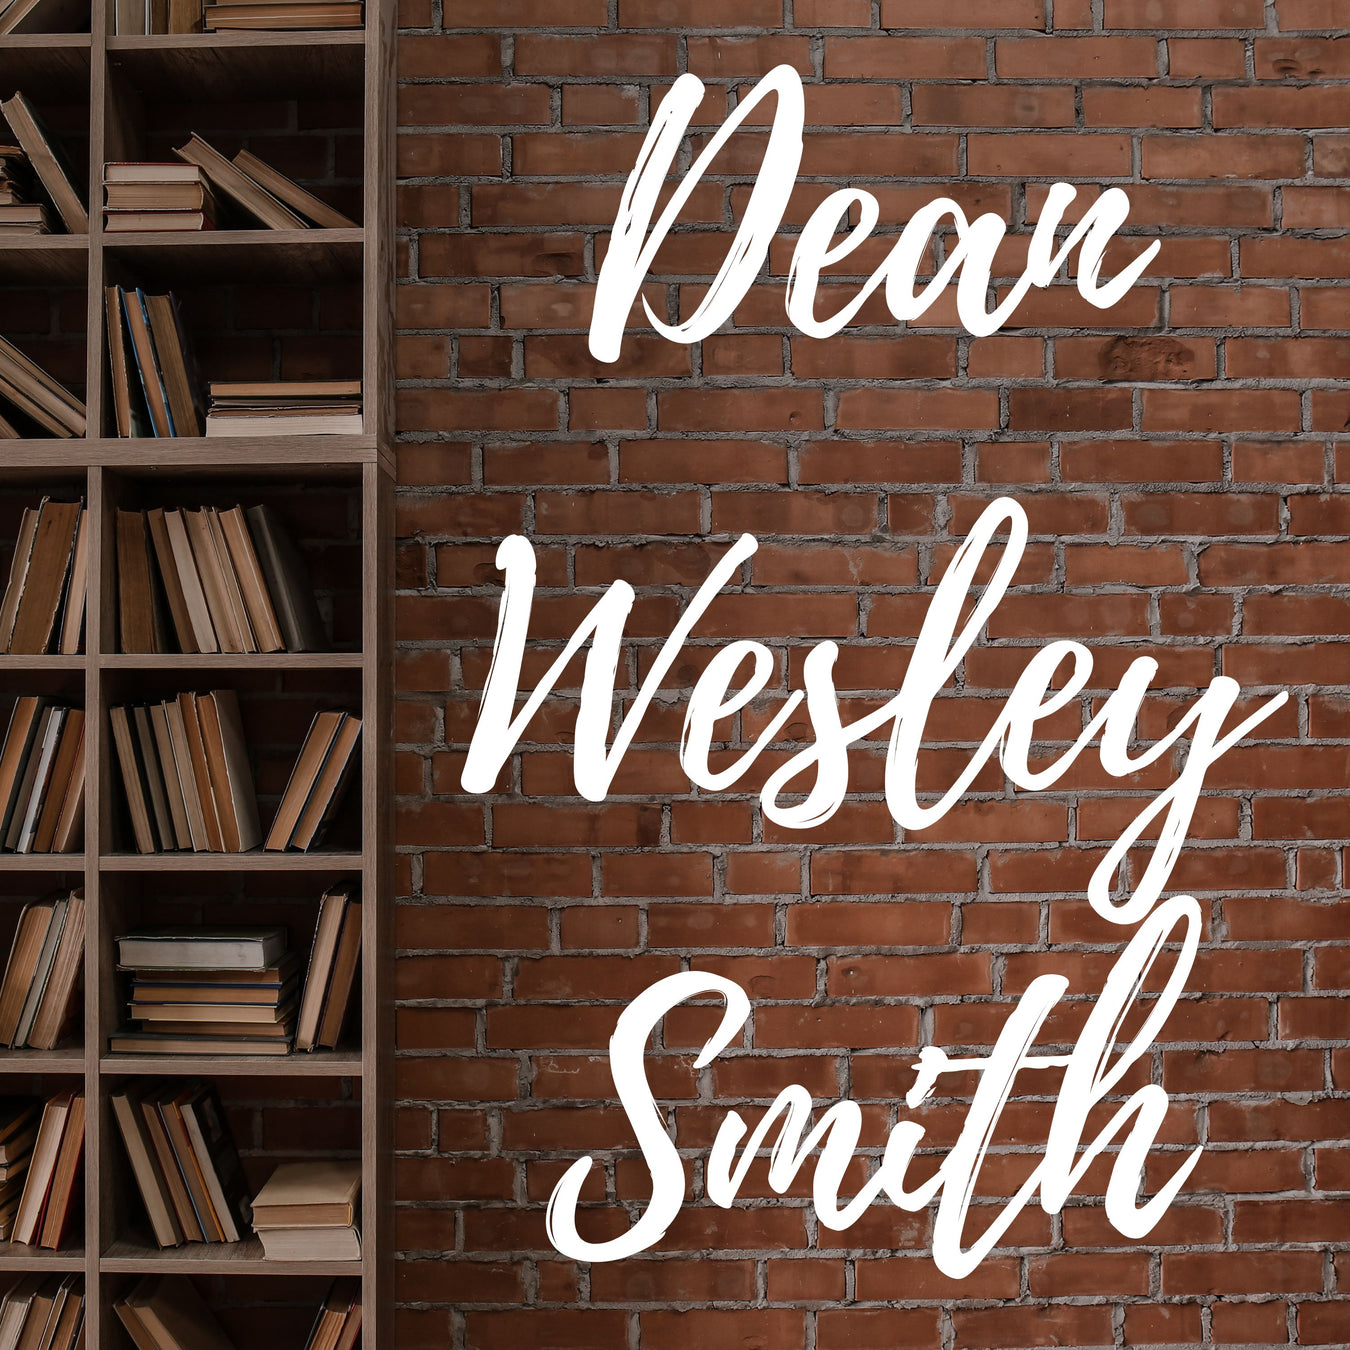 Dean Wesley Smith